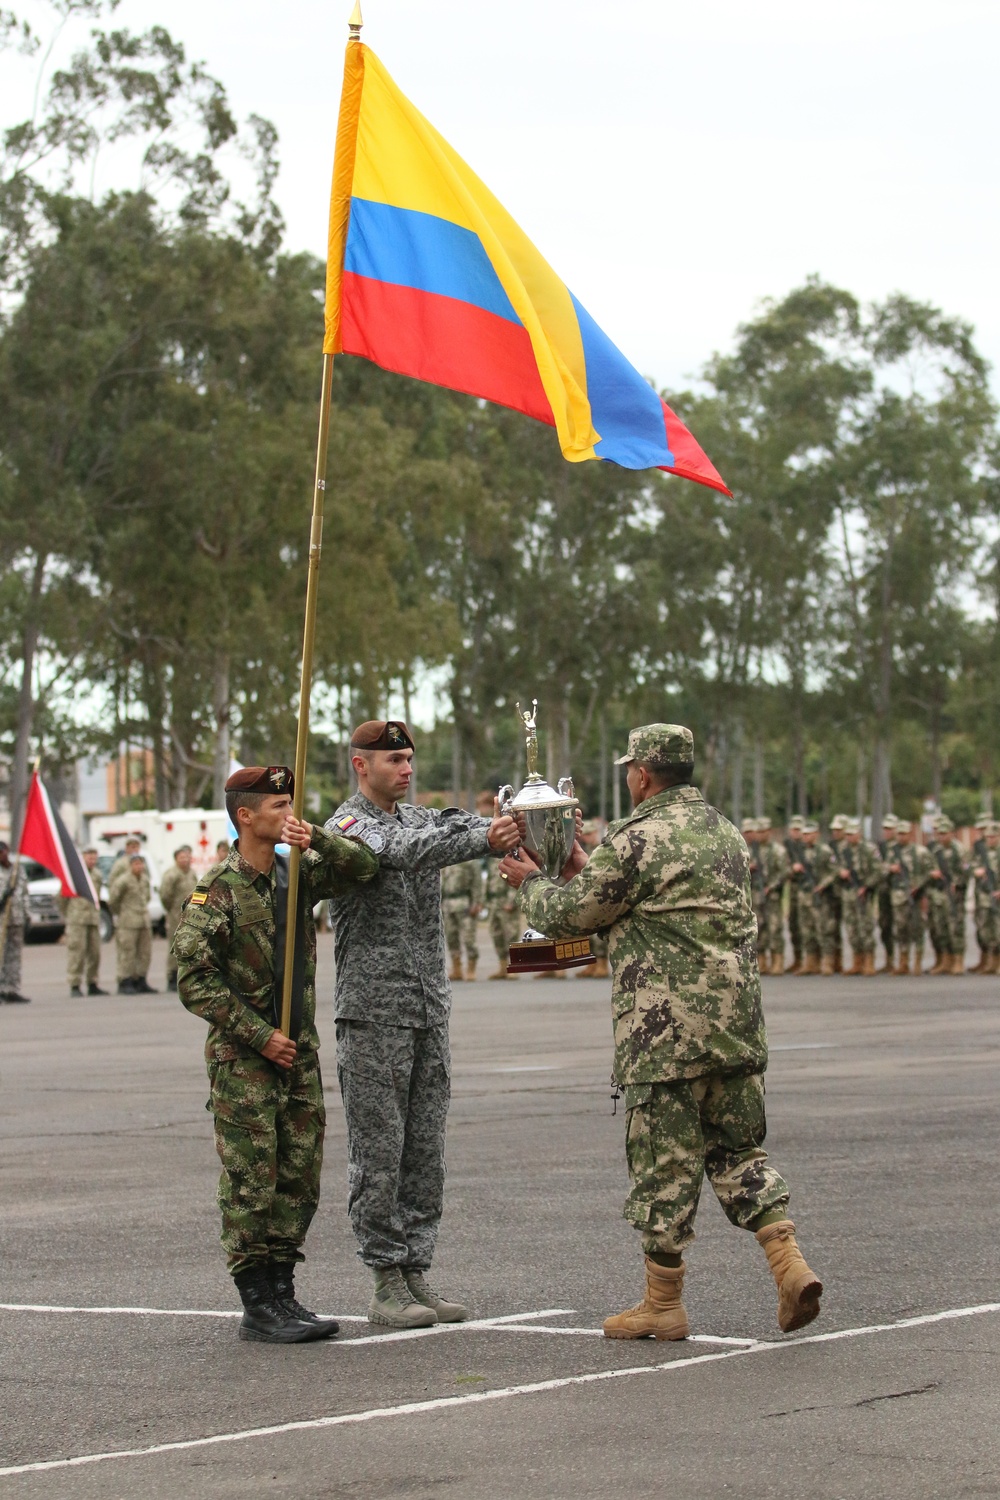 Fuerzas Comando 2017 Opening Ceremony